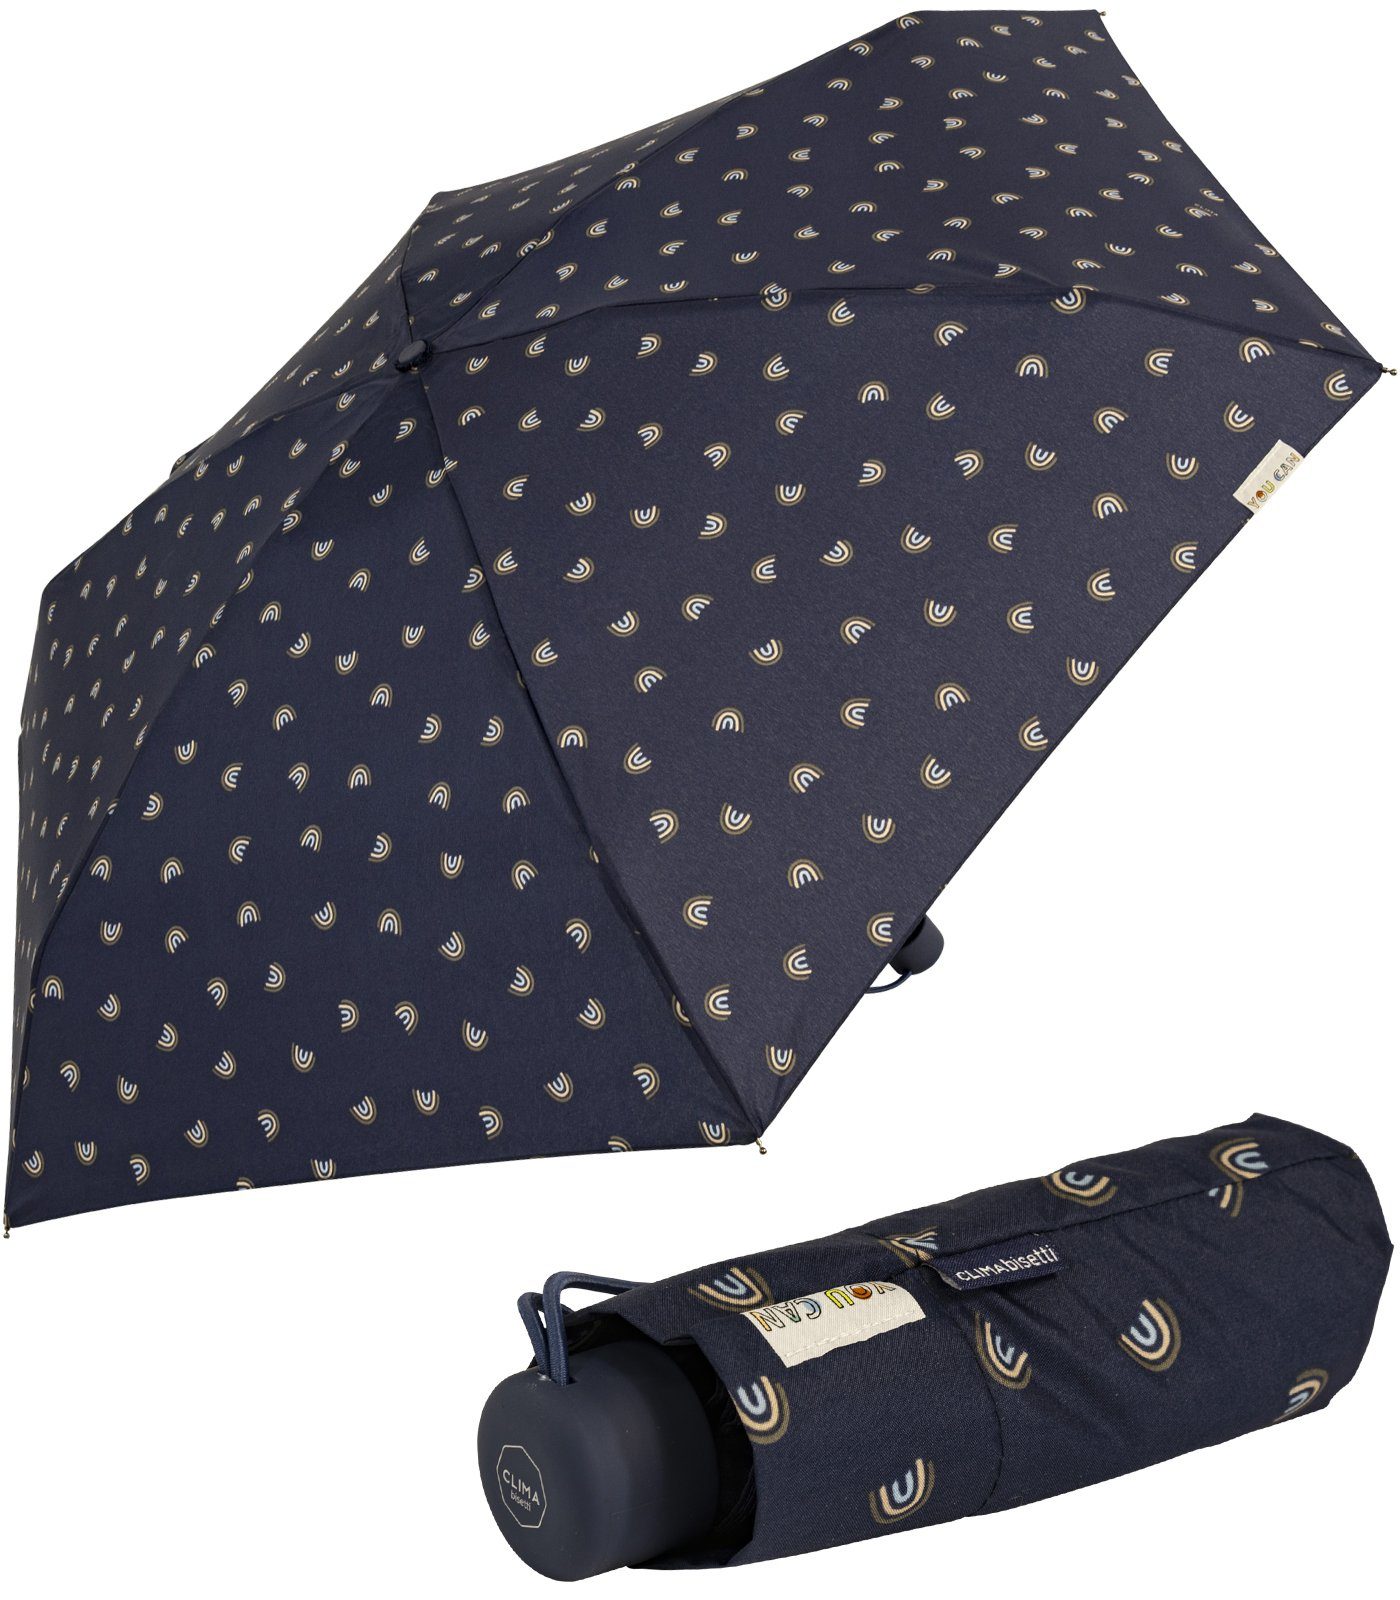 Farben Damen-Regenschirm, kompakt, mit stabil, mit bisetti Handöffner, navy gedeckte klein, Bögen-Motiv Taschenregenschirm -